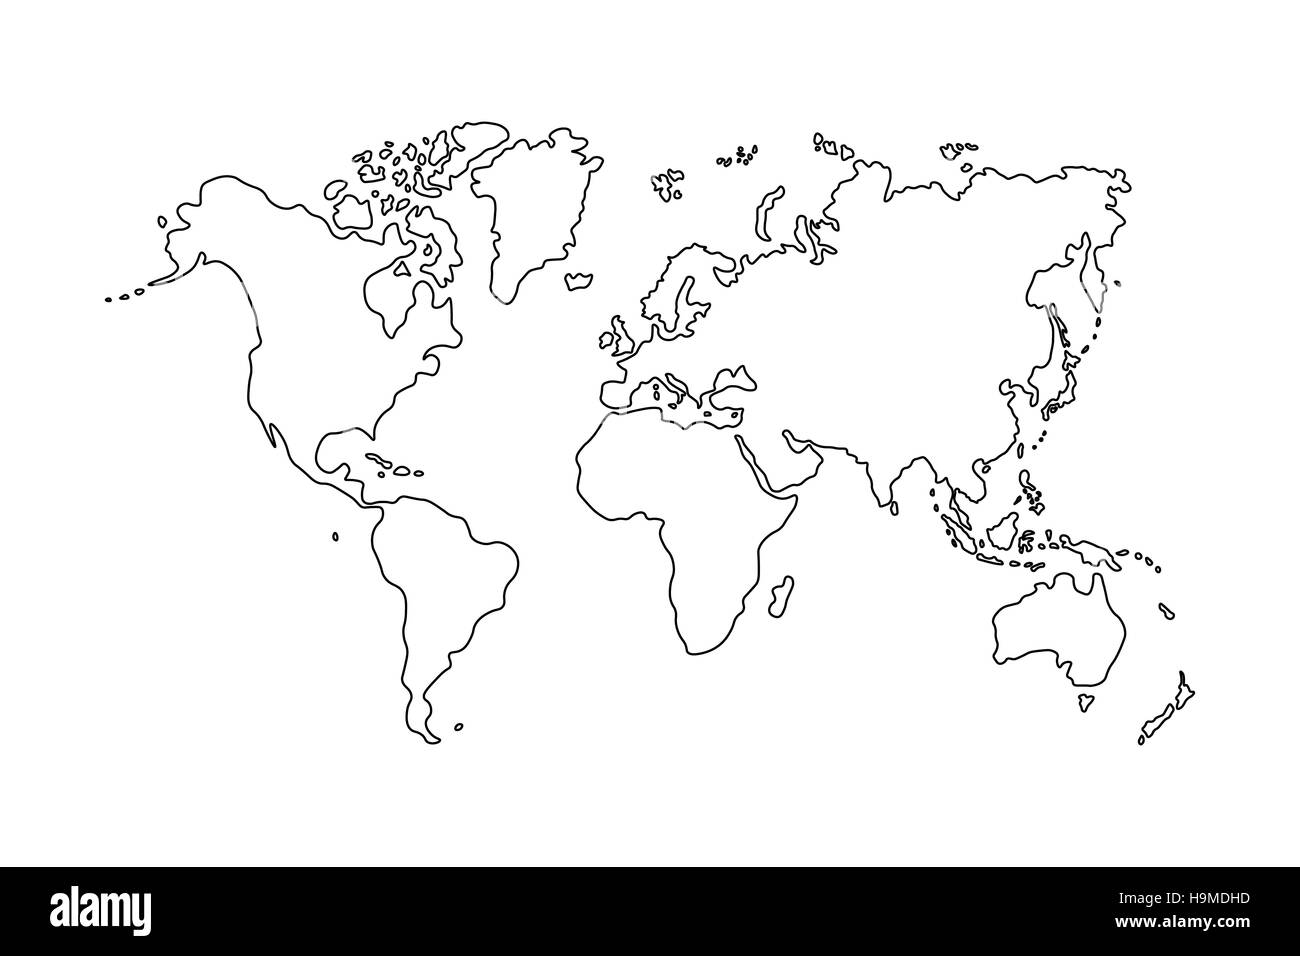 Description de la carte du monde sur fond blanc Banque D'Images